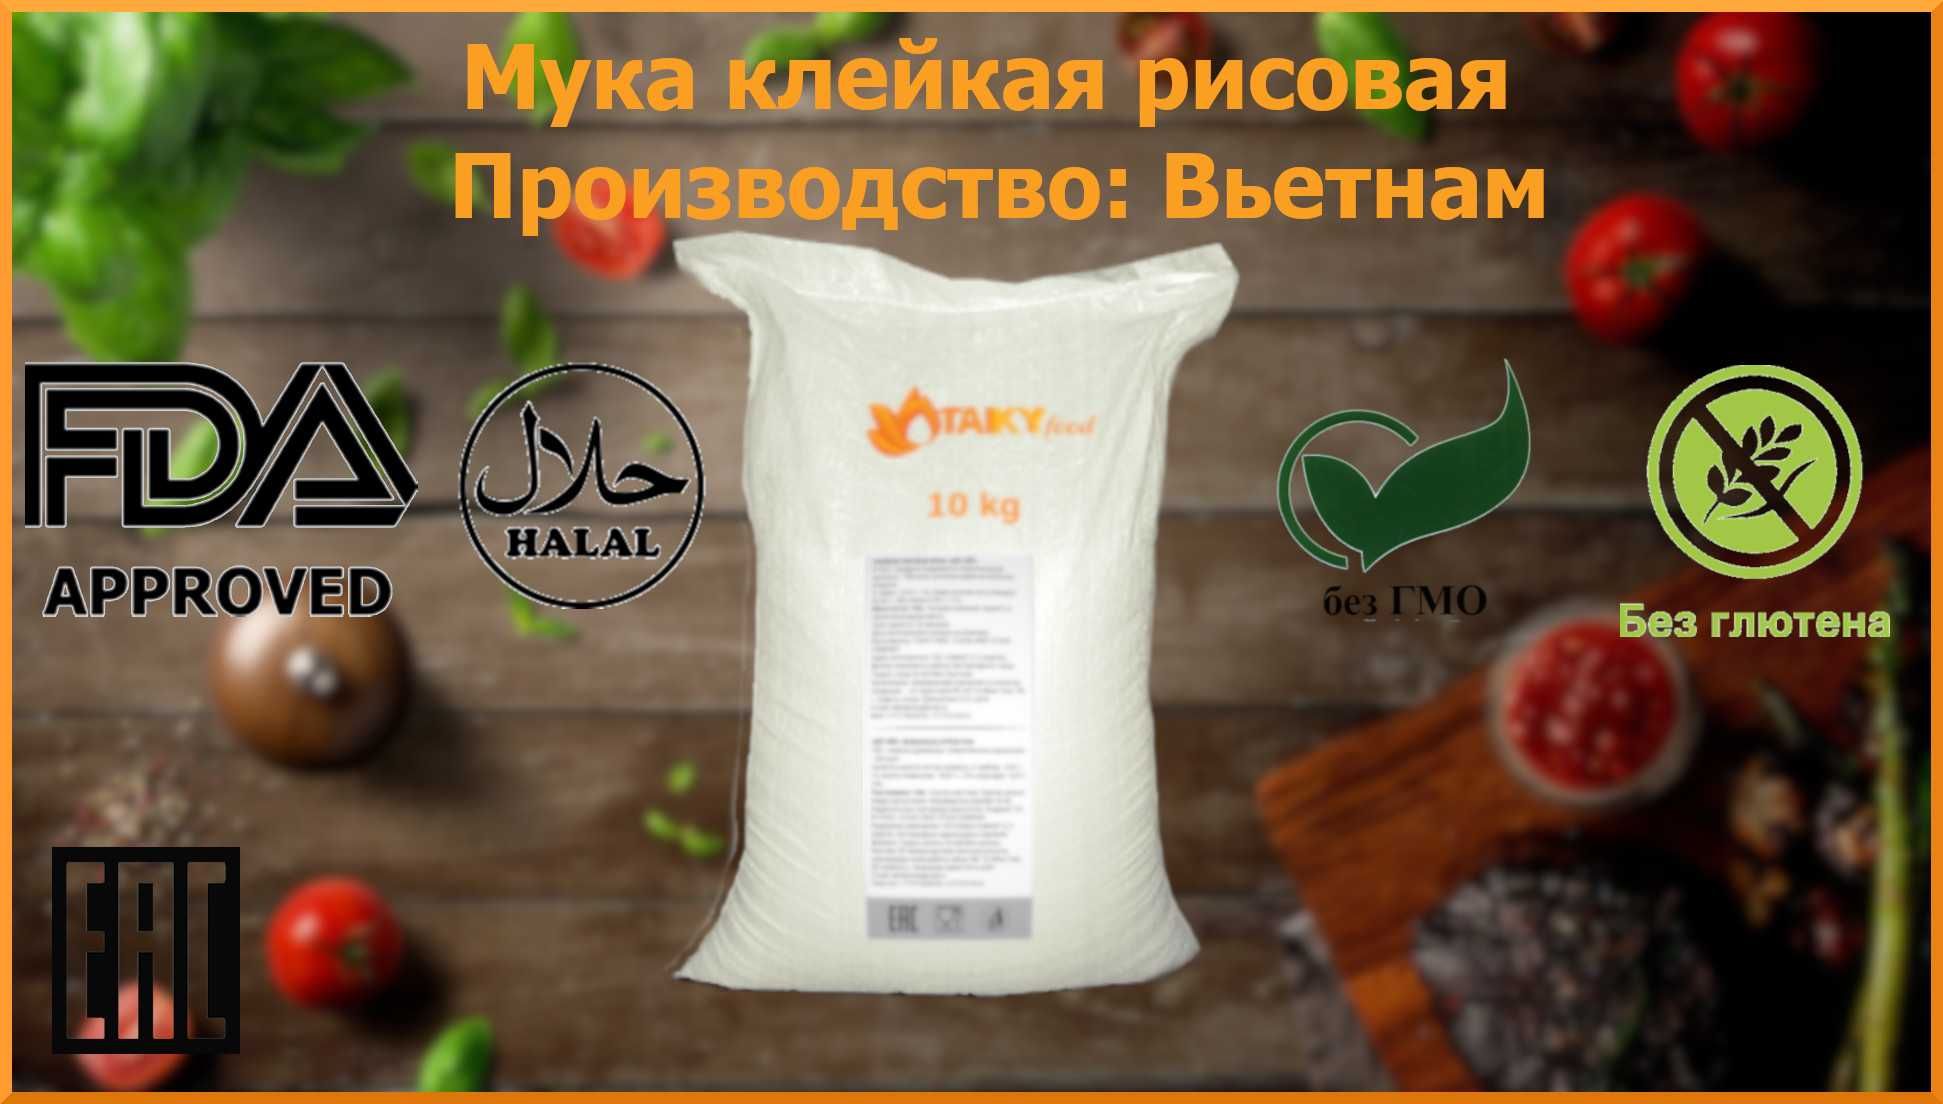 Мука клейкая рисовая 10 кг. TAIKY FOOD, оптовая цена по запросу